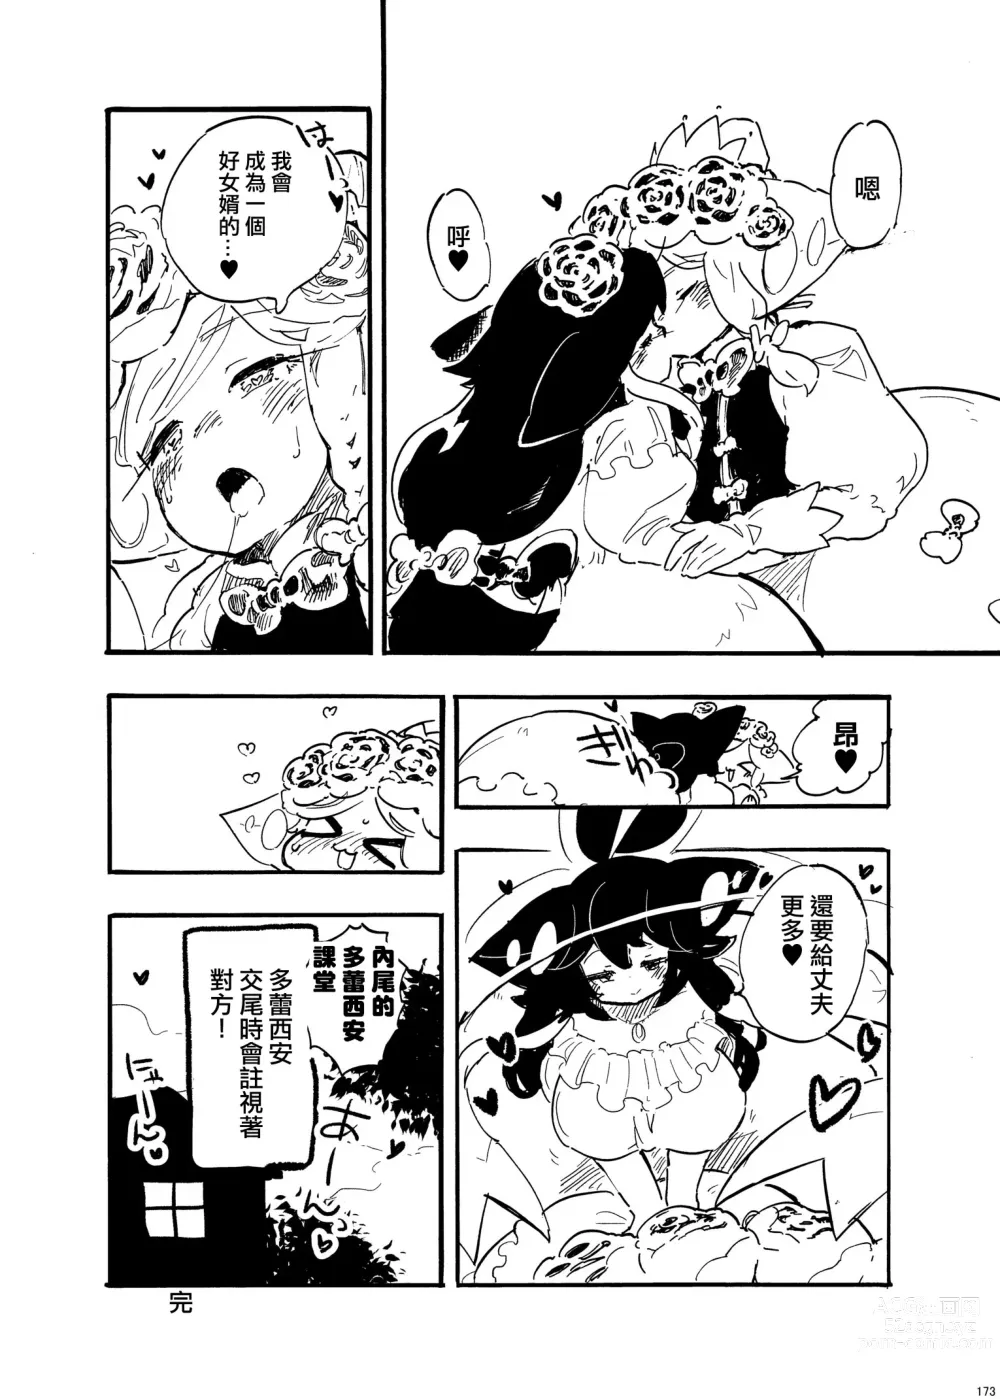 Page 16 of manga 外星人D和研究員U的遭遇